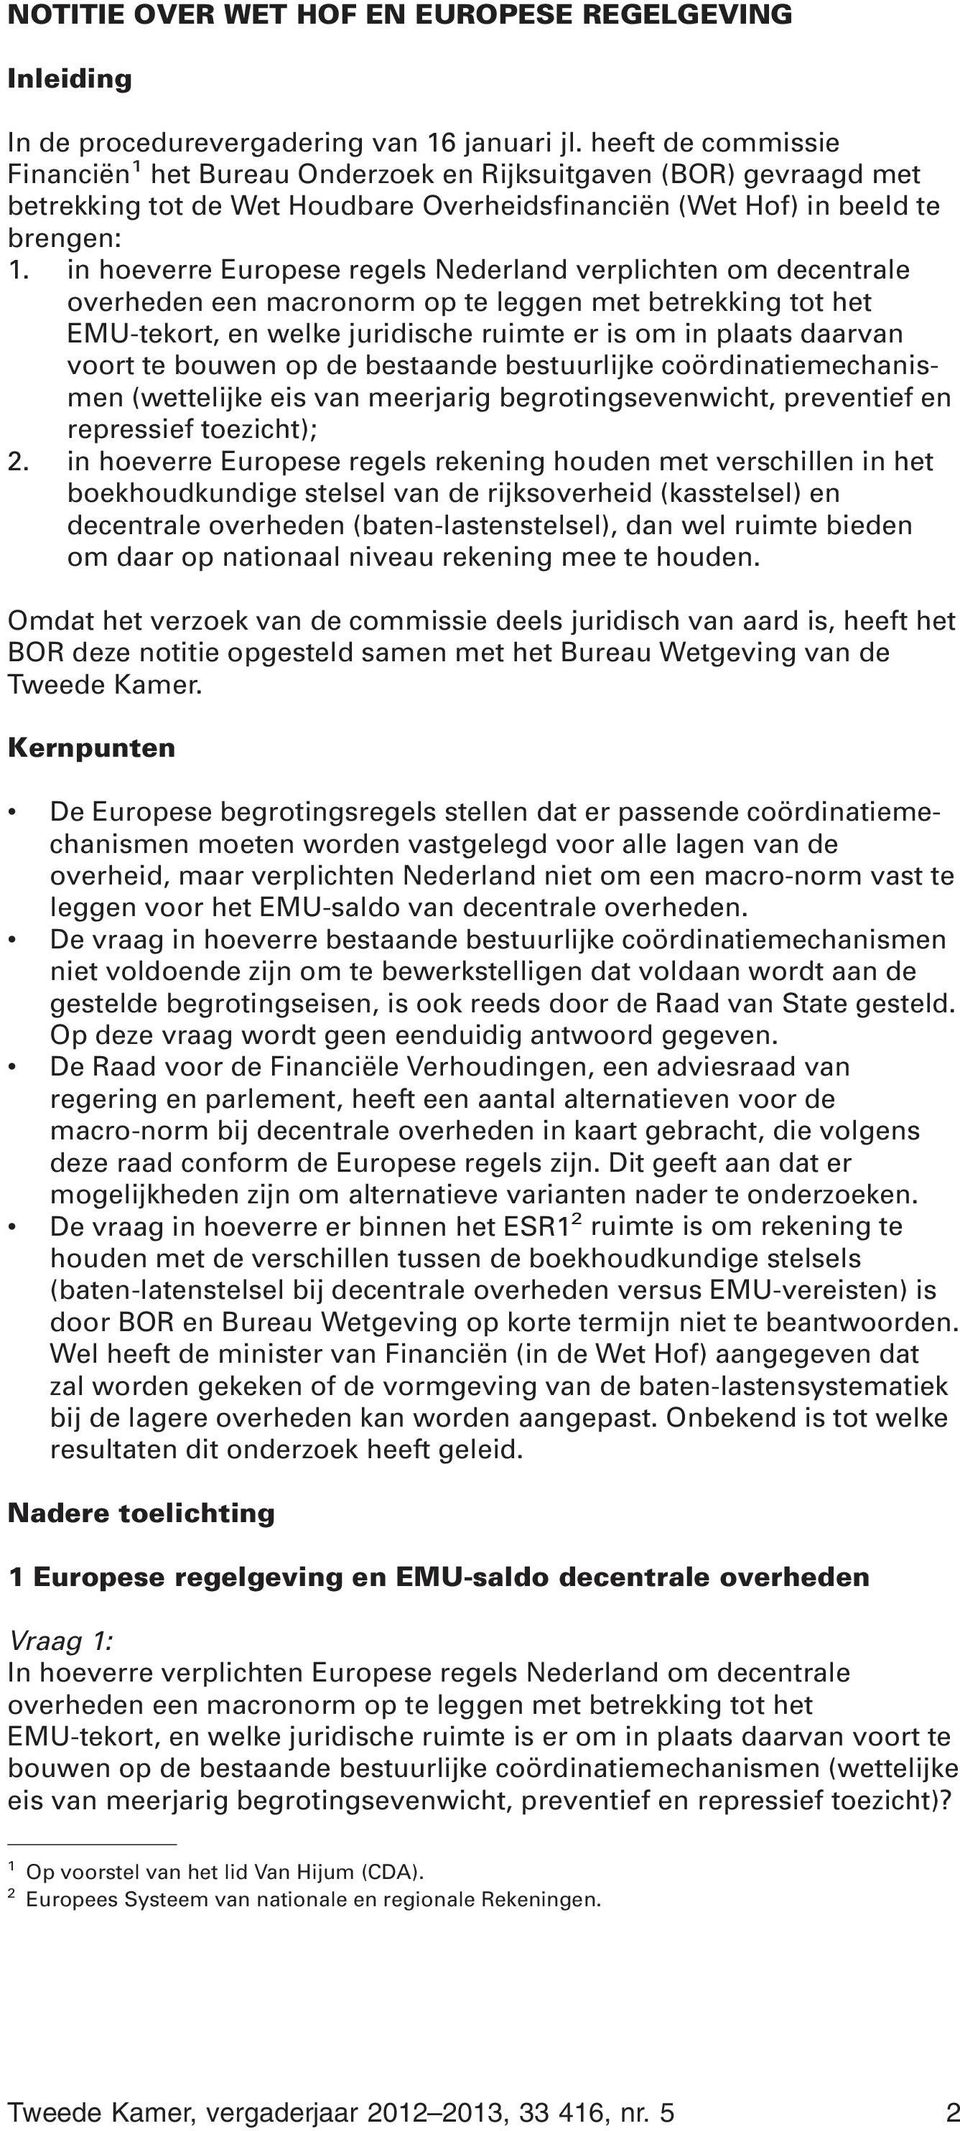 in hoeverre Europese regels Nederland verplichten om decentrale overheden een macronorm op te leggen met betrekking tot het EMU-tekort, en welke juridische ruimte er is om in plaats daarvan voort te